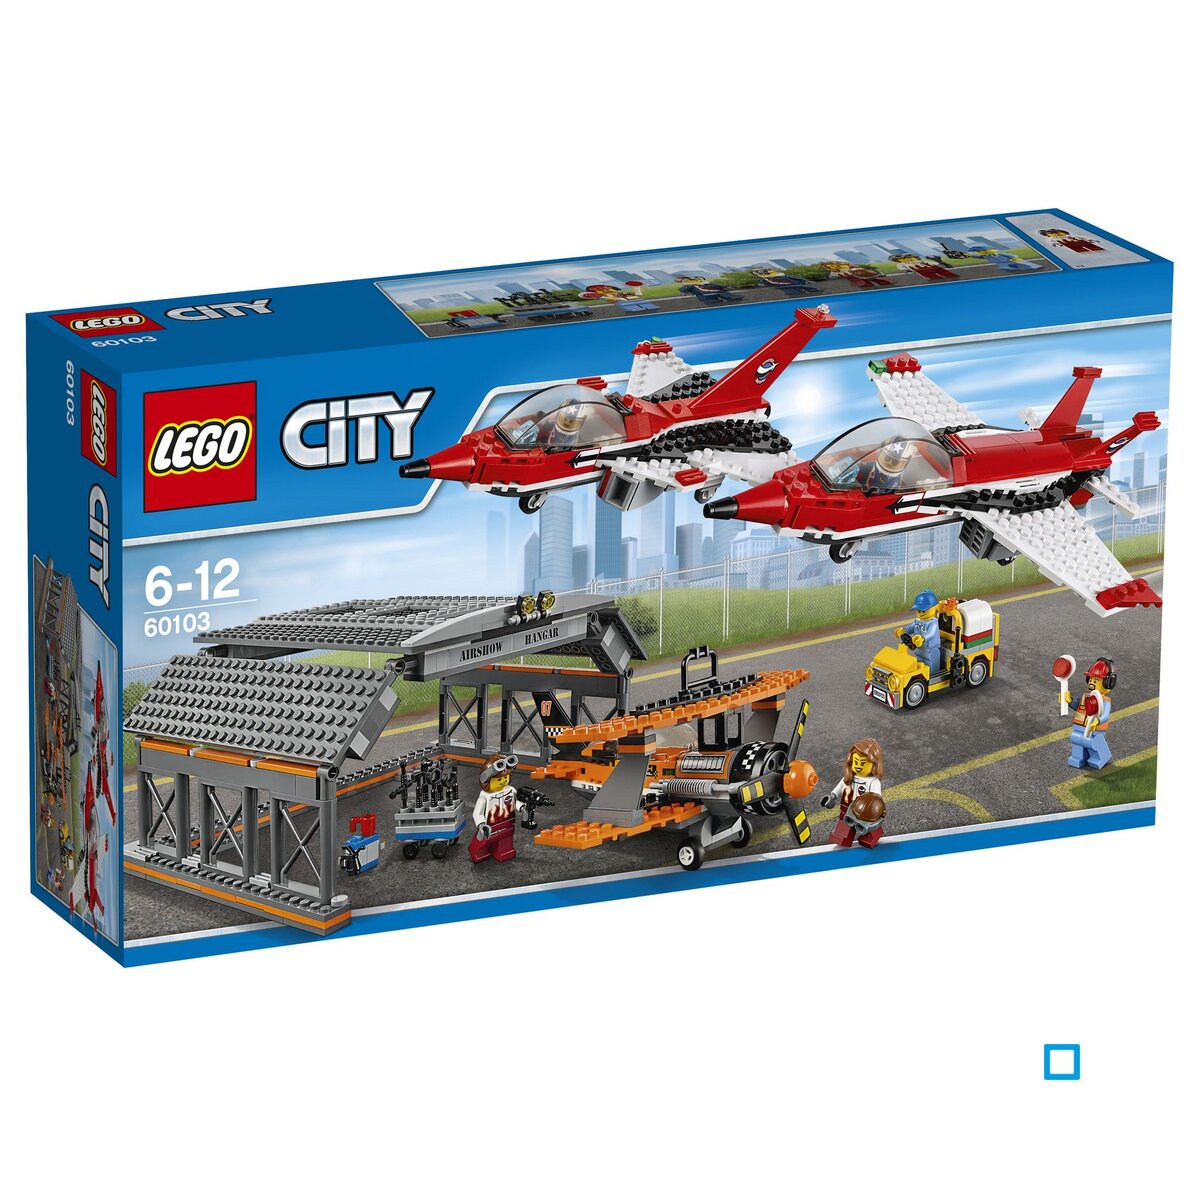 LEGO City 60103 - Le spectacle aérien